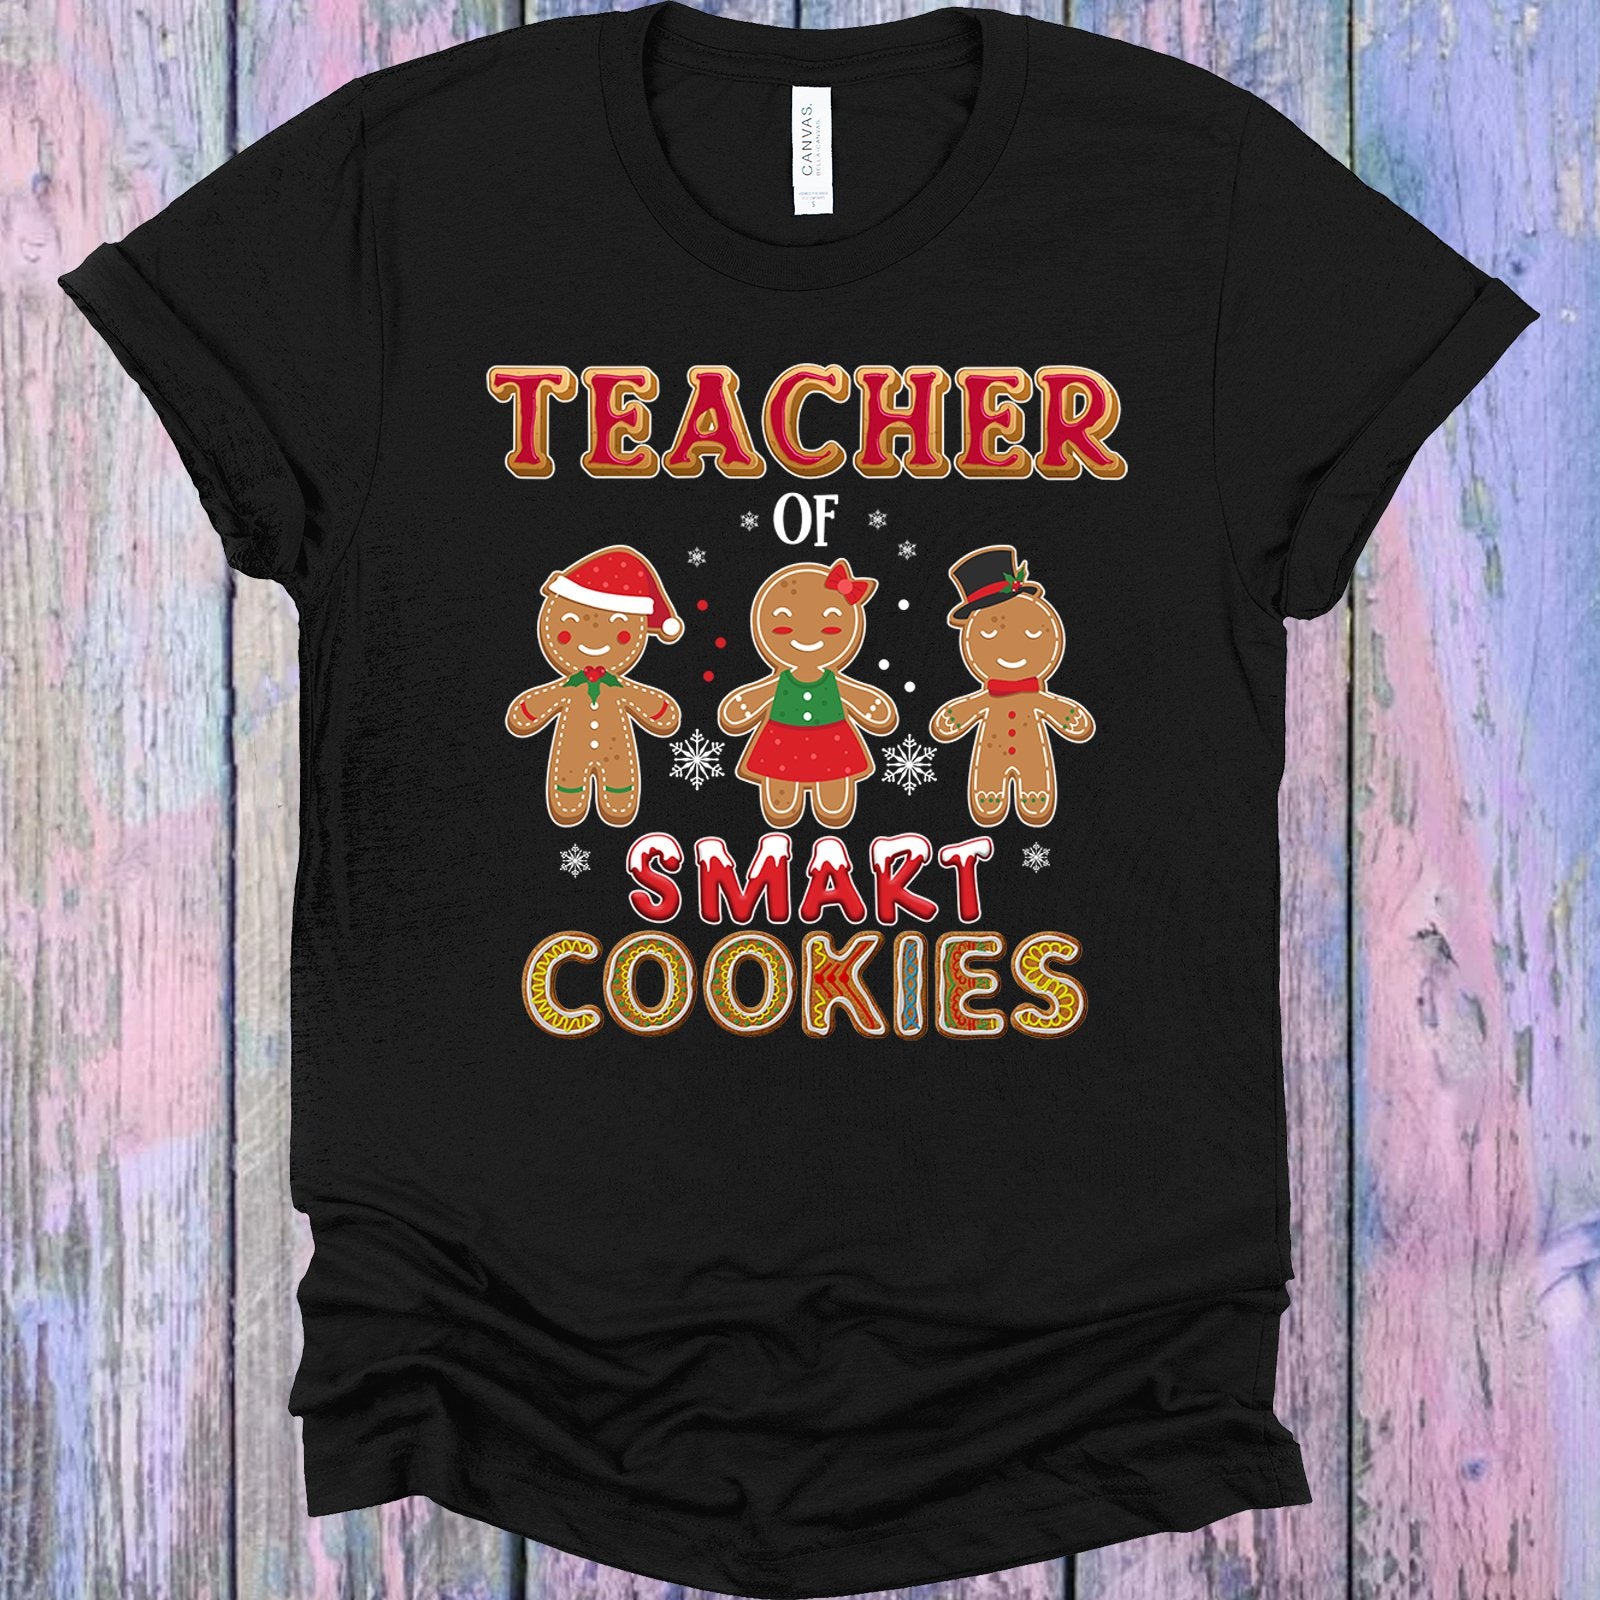 Teacher Of Smart Cookies Graphic Tee Graphic Tee